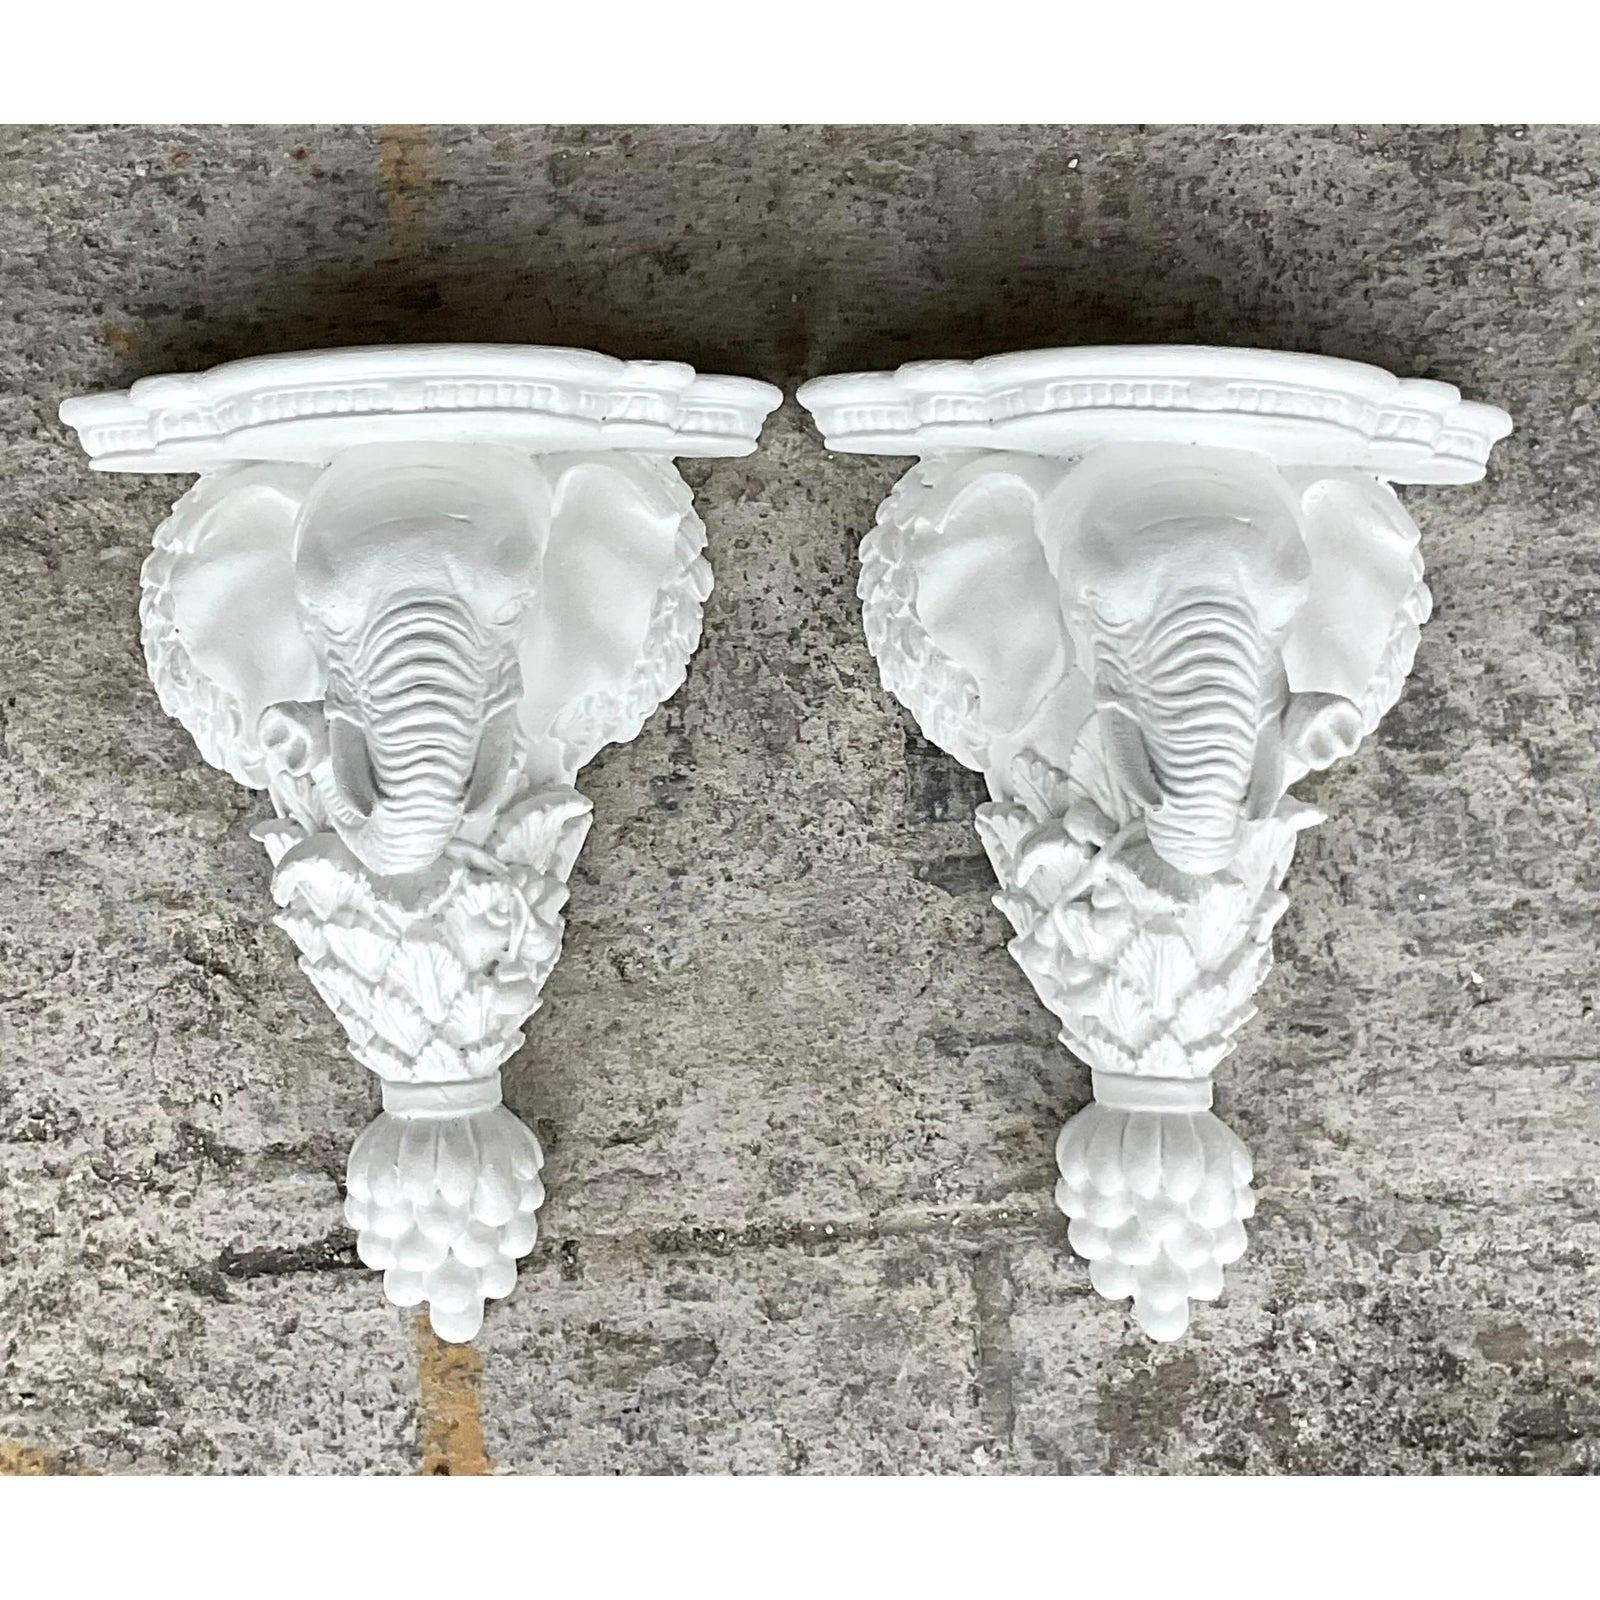 Ein fabelhaftes Paar von Vintage Boho Klammern. Ein schickes Paar hübscher Elefanten in strahlendem Weiß. Perfekt für drinnen oder draußen in einem überdachten Bereich. Erworben aus einem Nachlass in Palm Beach.